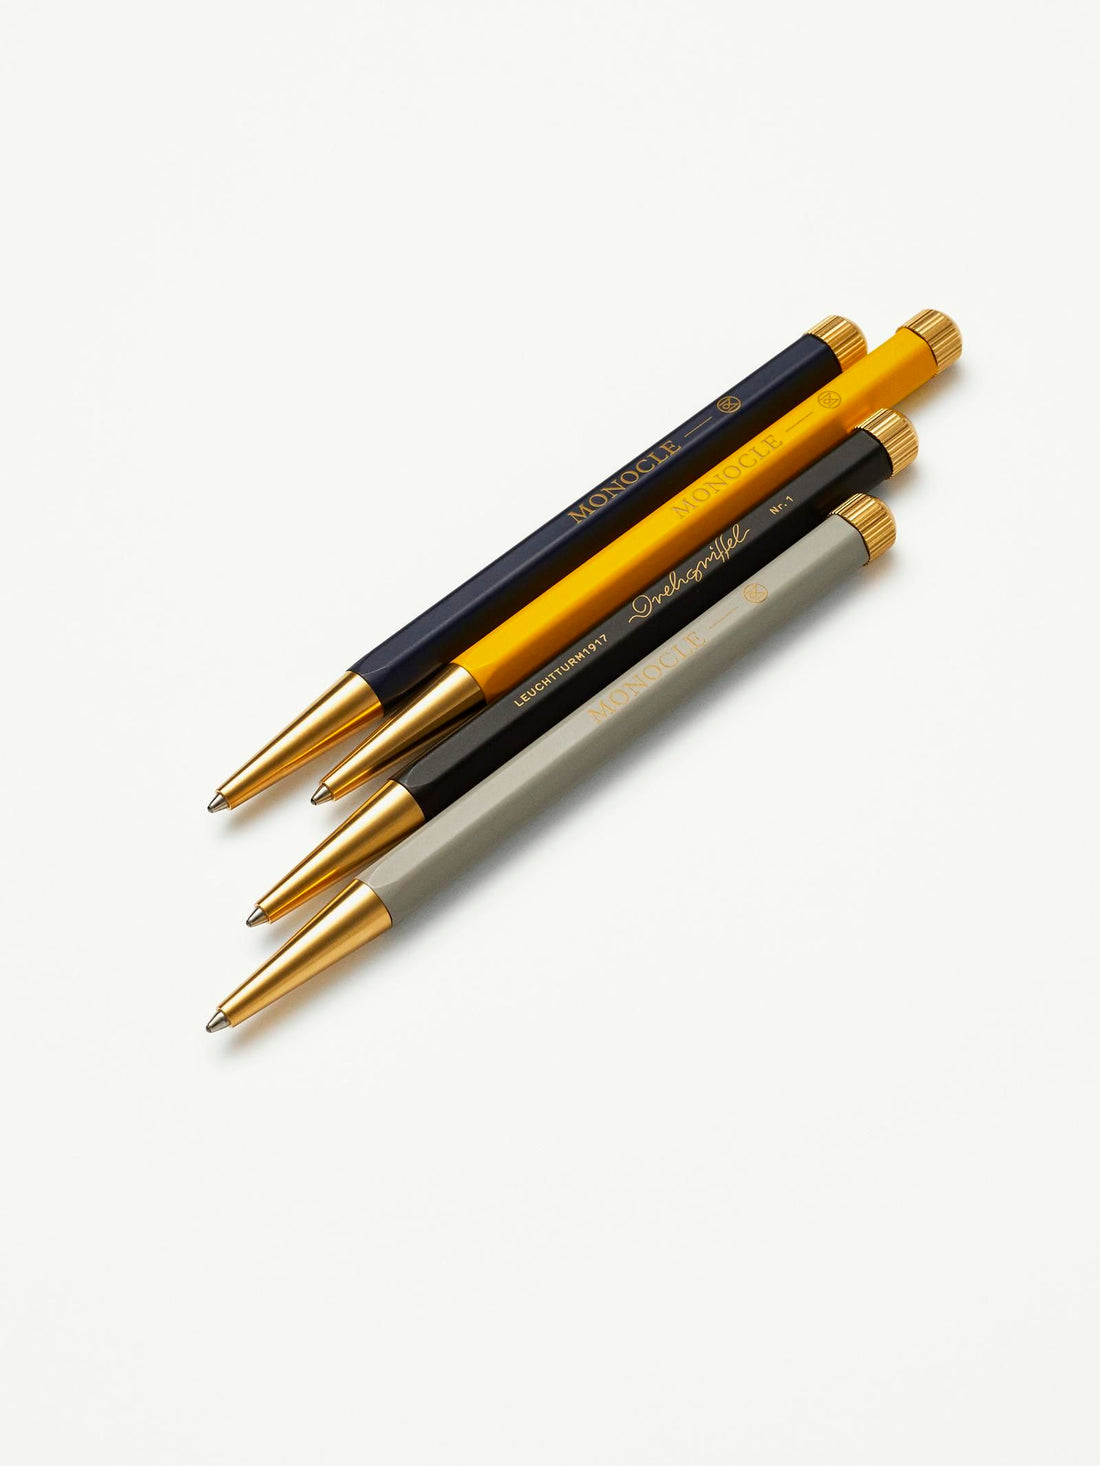 Monokl Drehgriffel – żółty – czarny tusz 